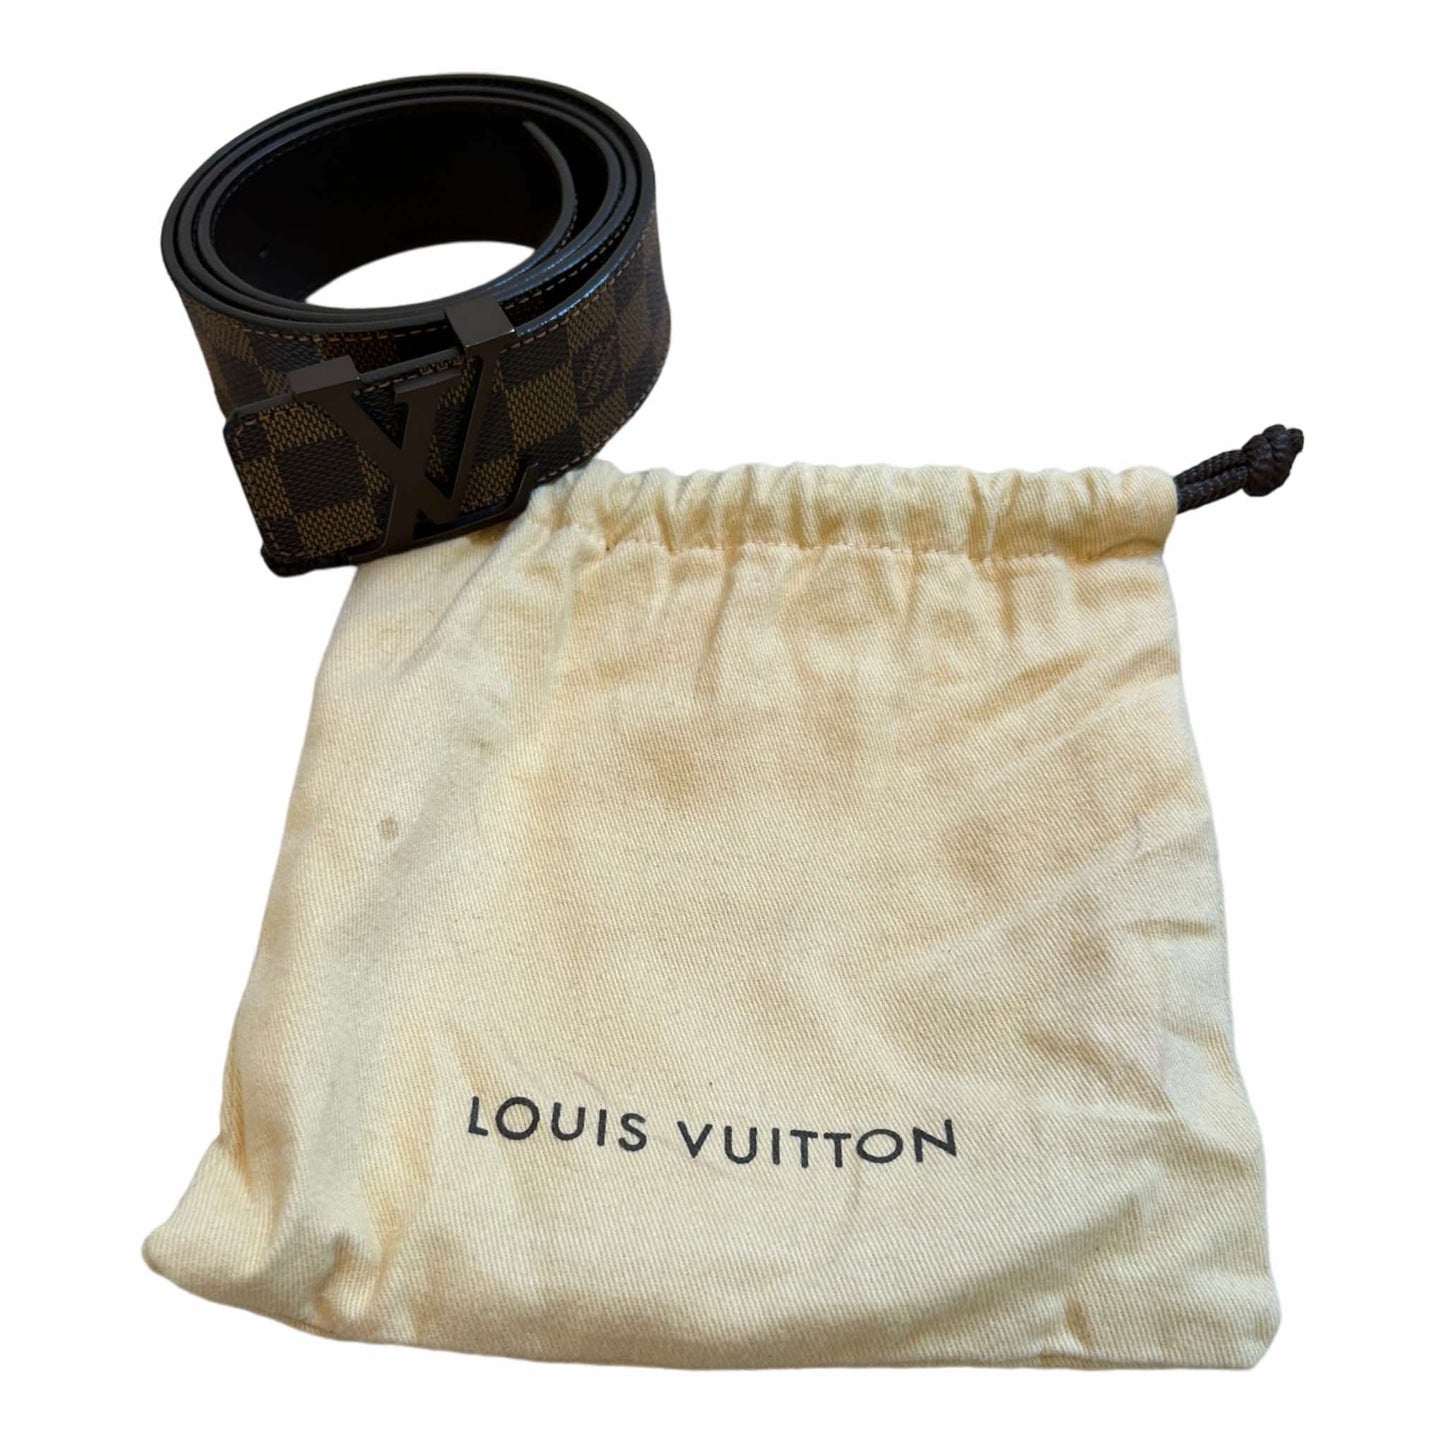 Pre-Loved Louis Vuitton Damier Ebene Belt (95/38) - M9807 – Refined Luxury